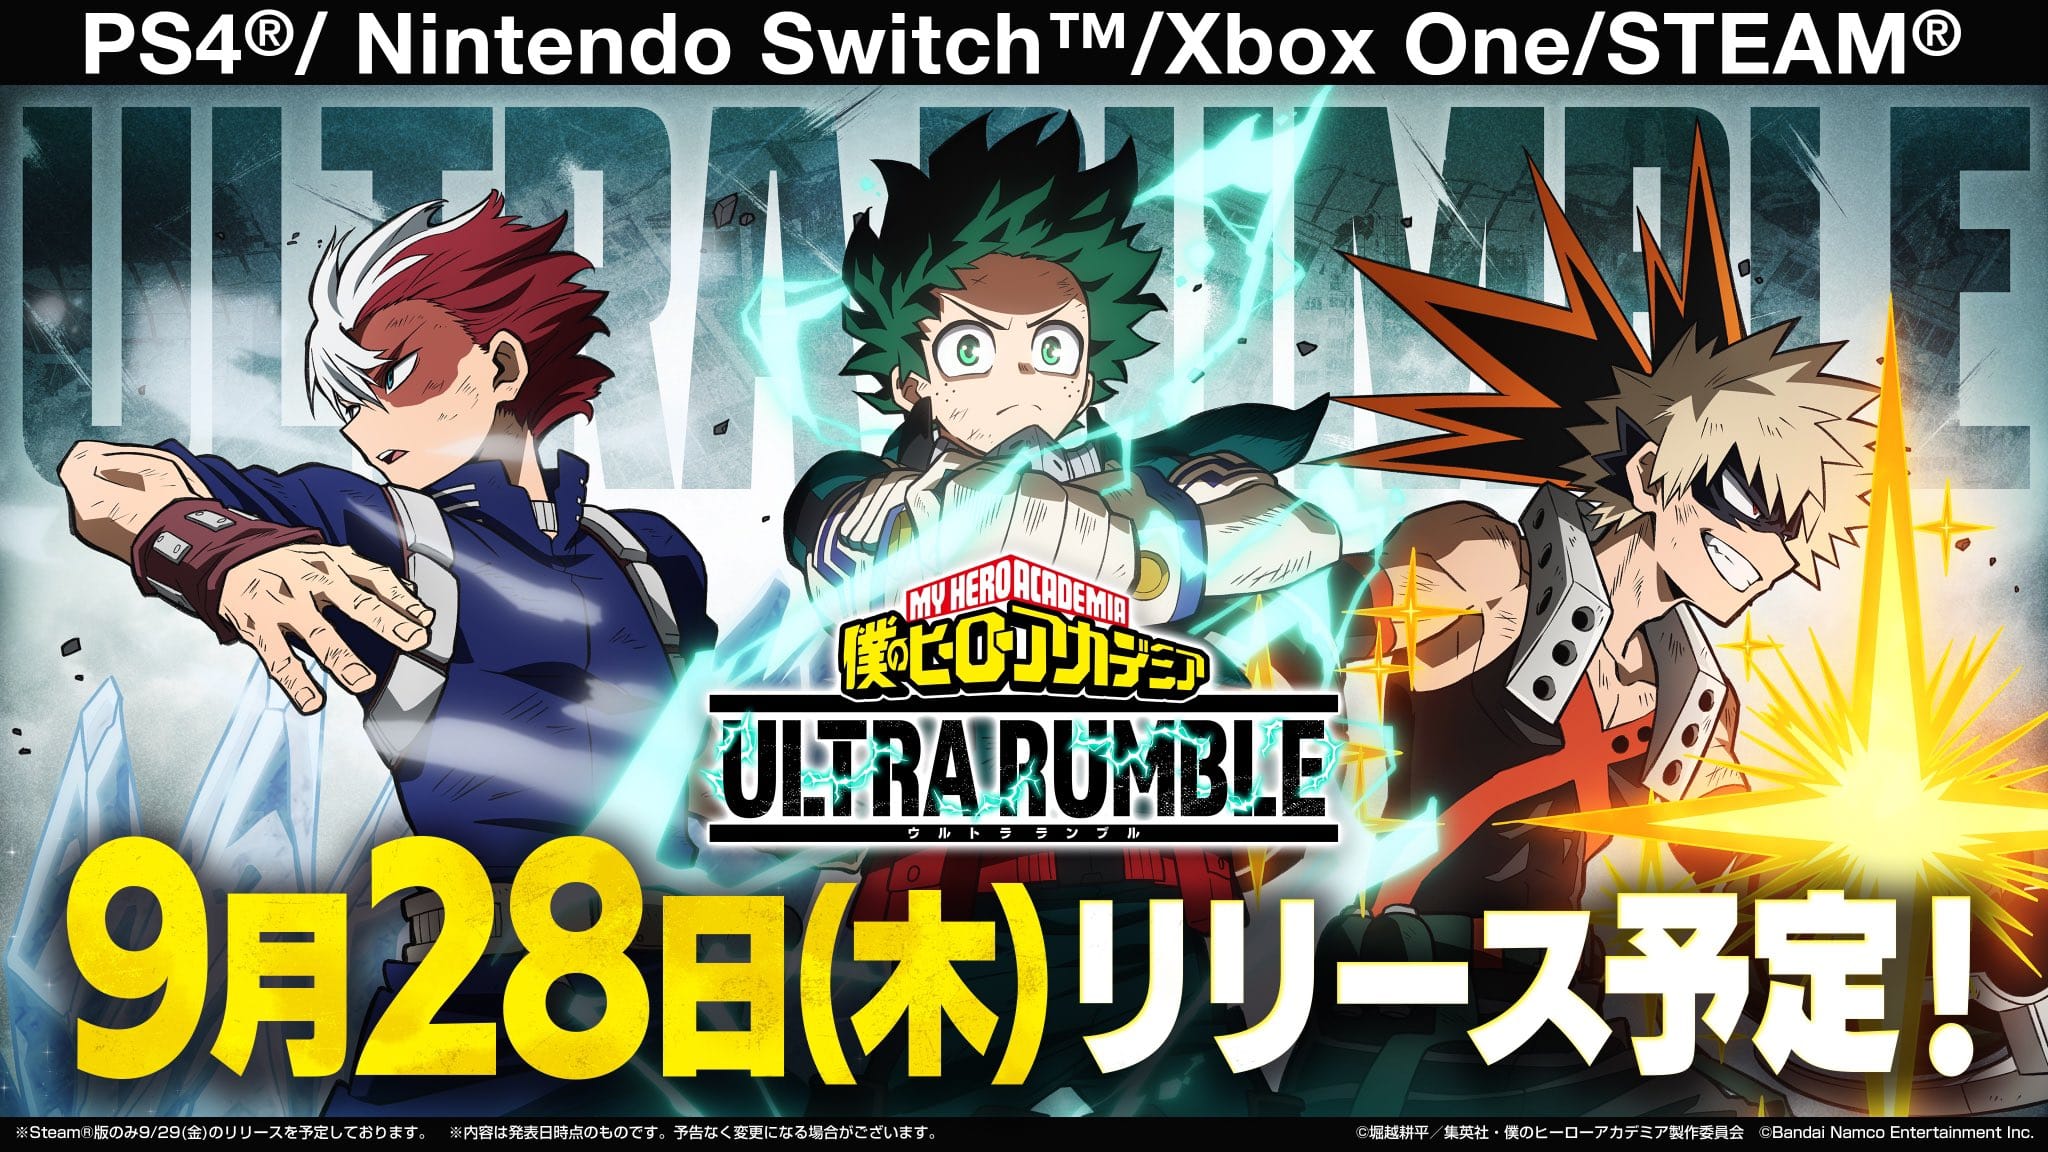 ゲーム「僕のヒーローアカデミア ULTRA RUMBLE」9月28日リリース!